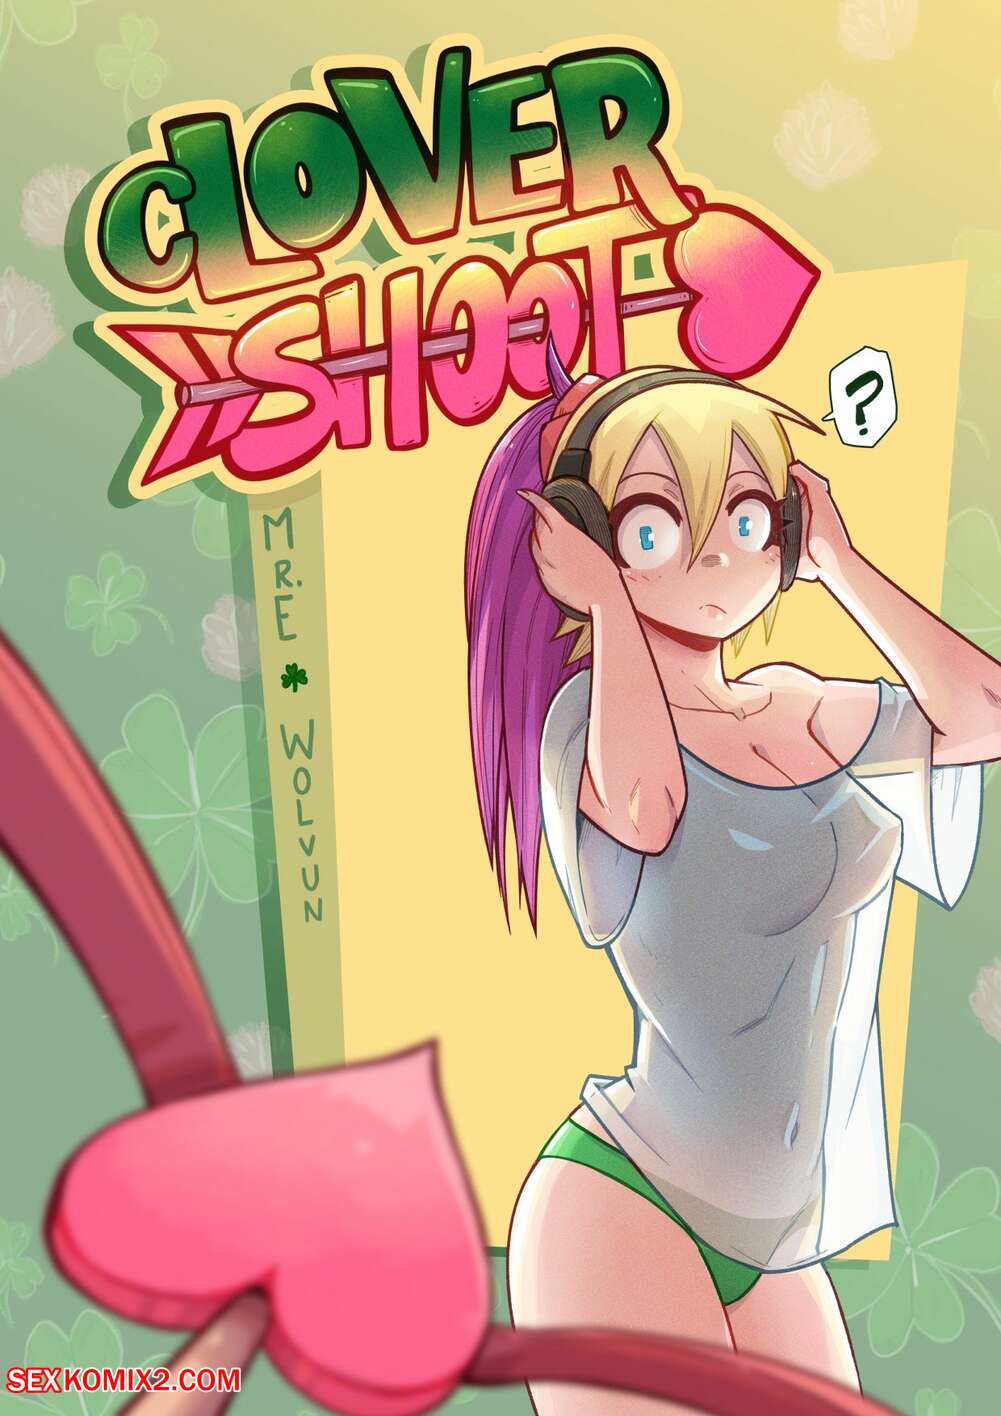 Sex Eeeeeeeeee - âœ…ï¸ Porn comic Clover Shoot. Chapter 2. Mr.E. Sex comic busty blonde was |  Porn comics in English for adults only | sexkomix2.com